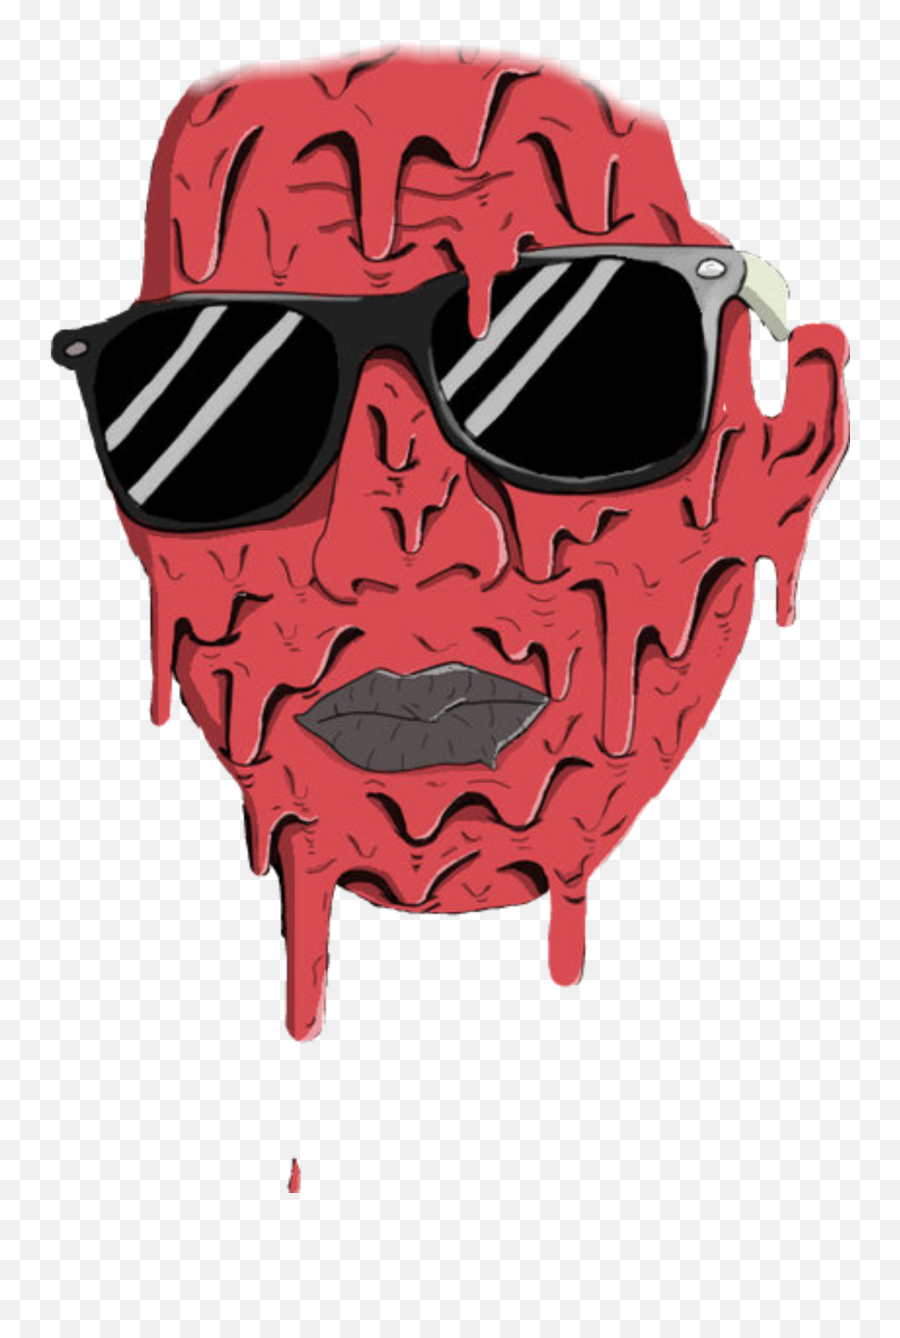 Memezasf Sunglasses Glasses Sticker By Supremeasf - For Adult Emoji,Sun Glasses Emojis Faces